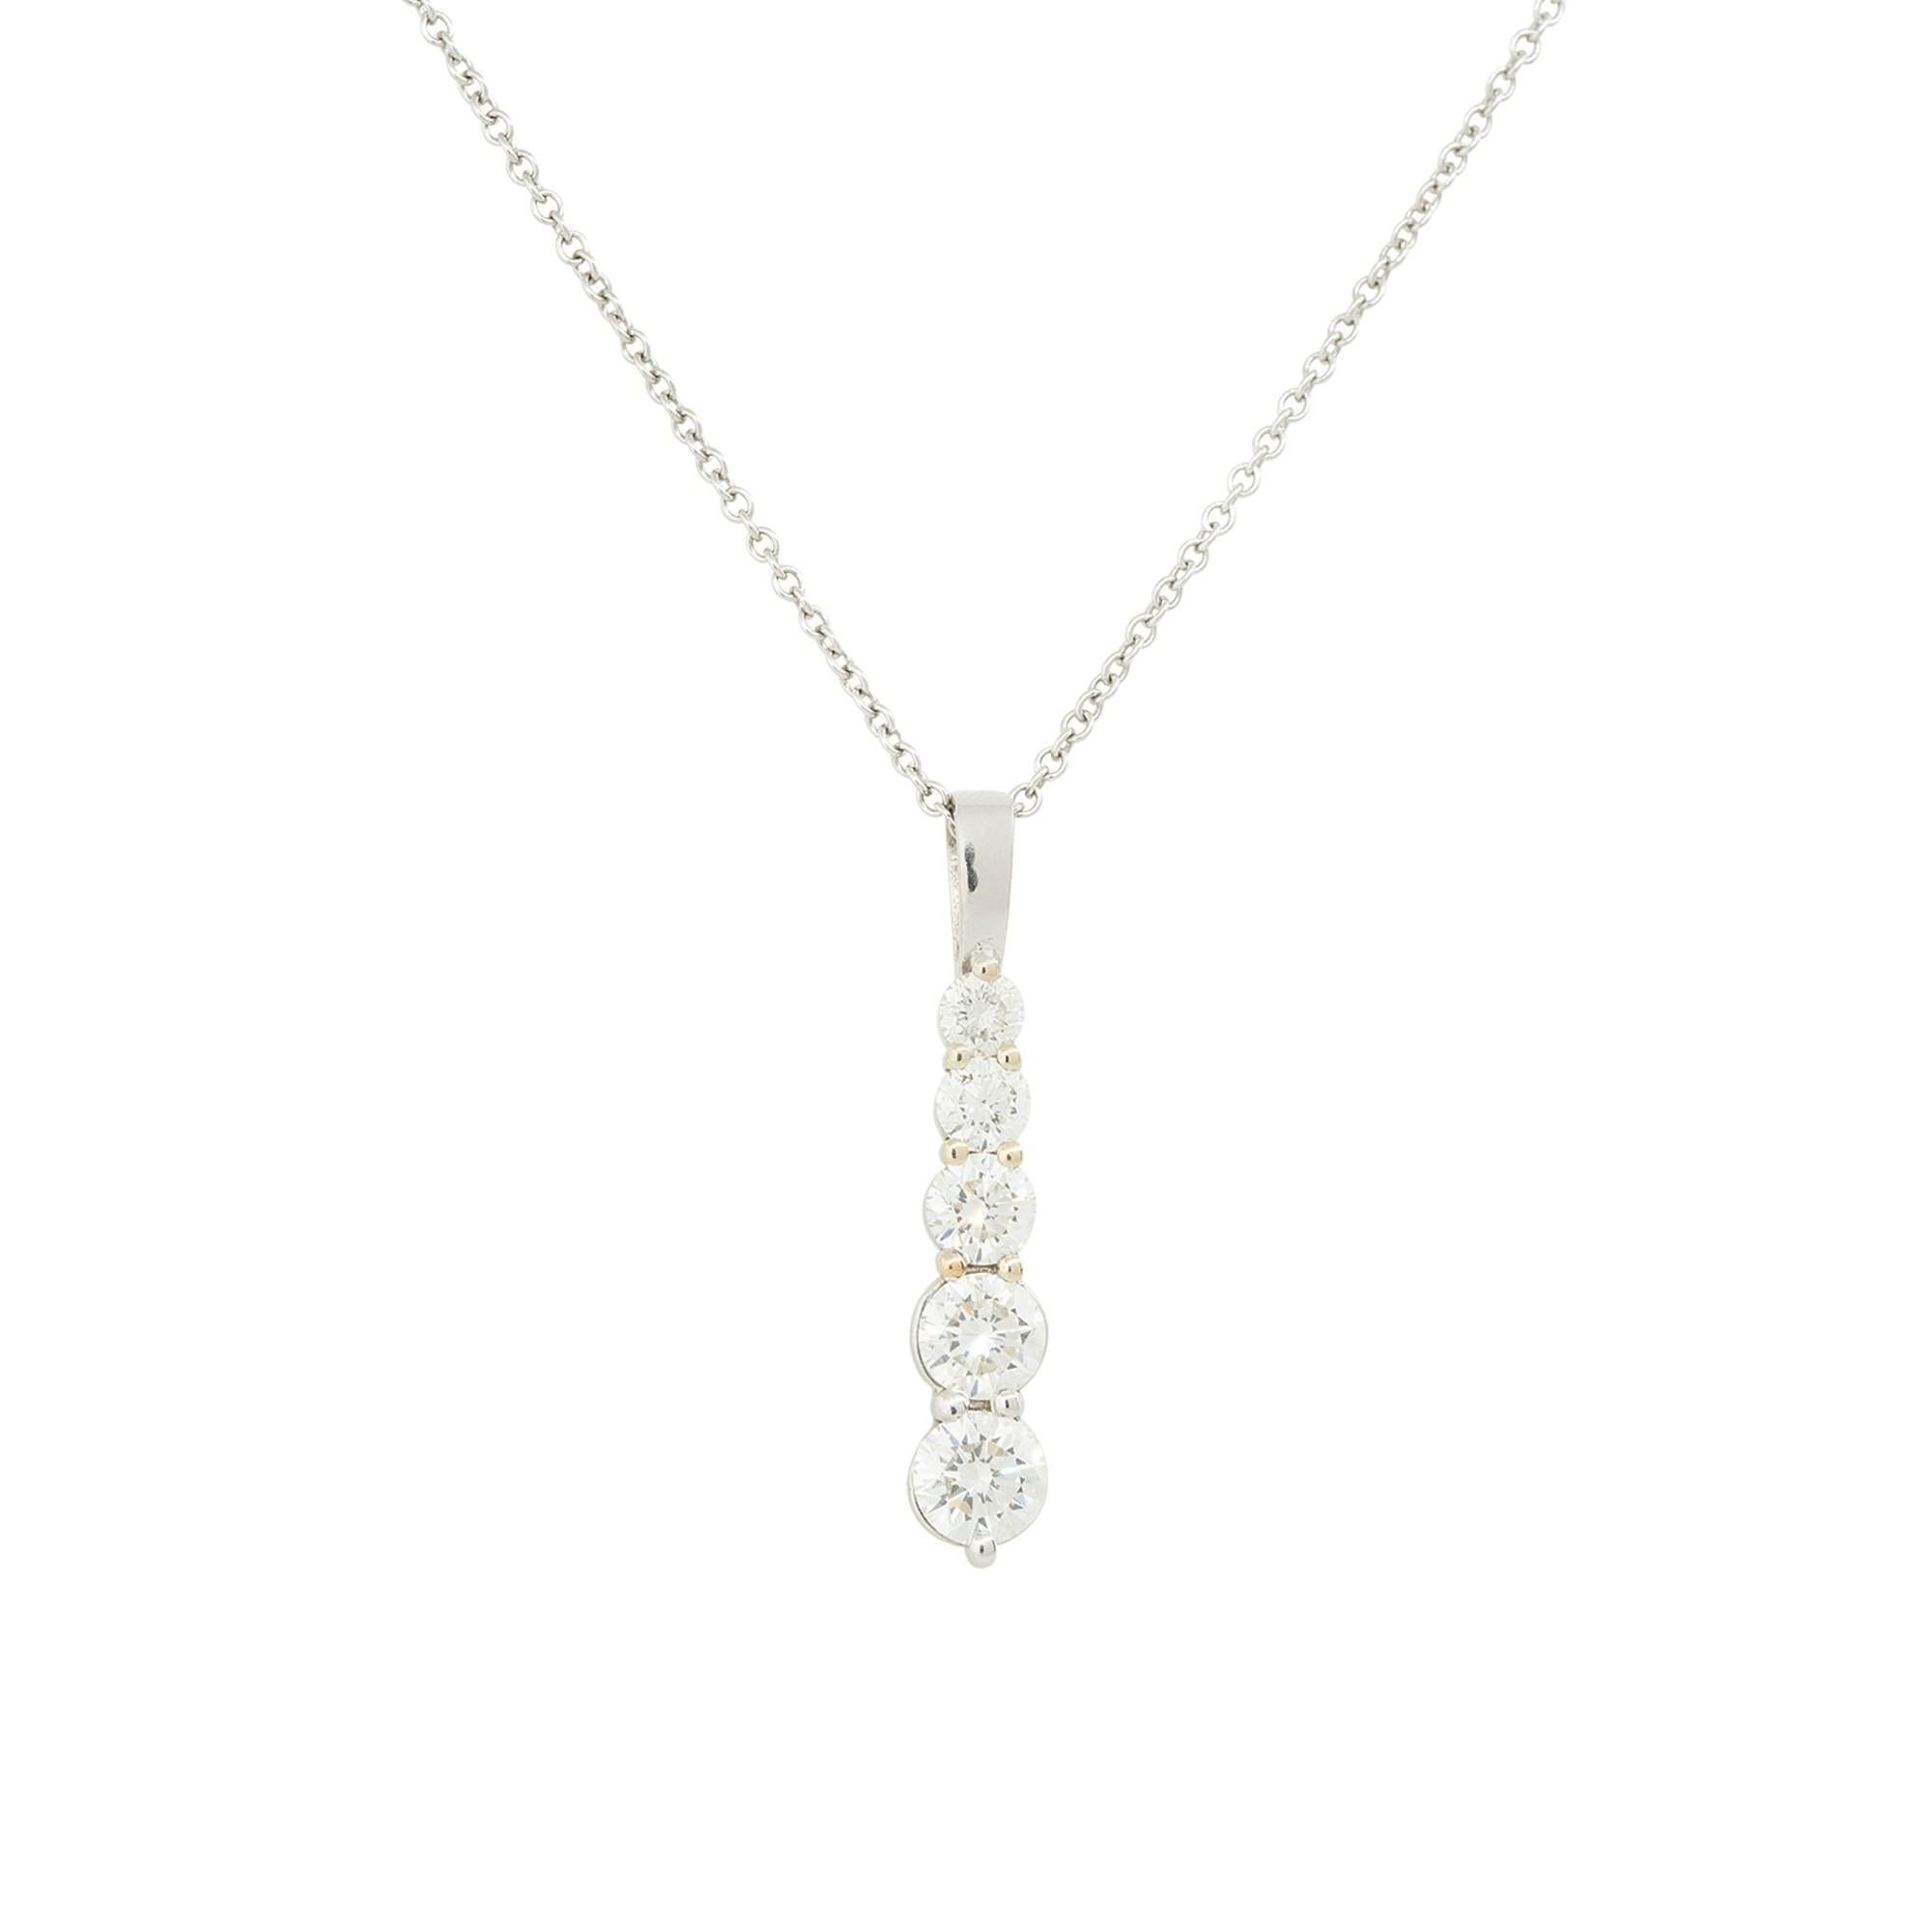 5 diamond drop necklace